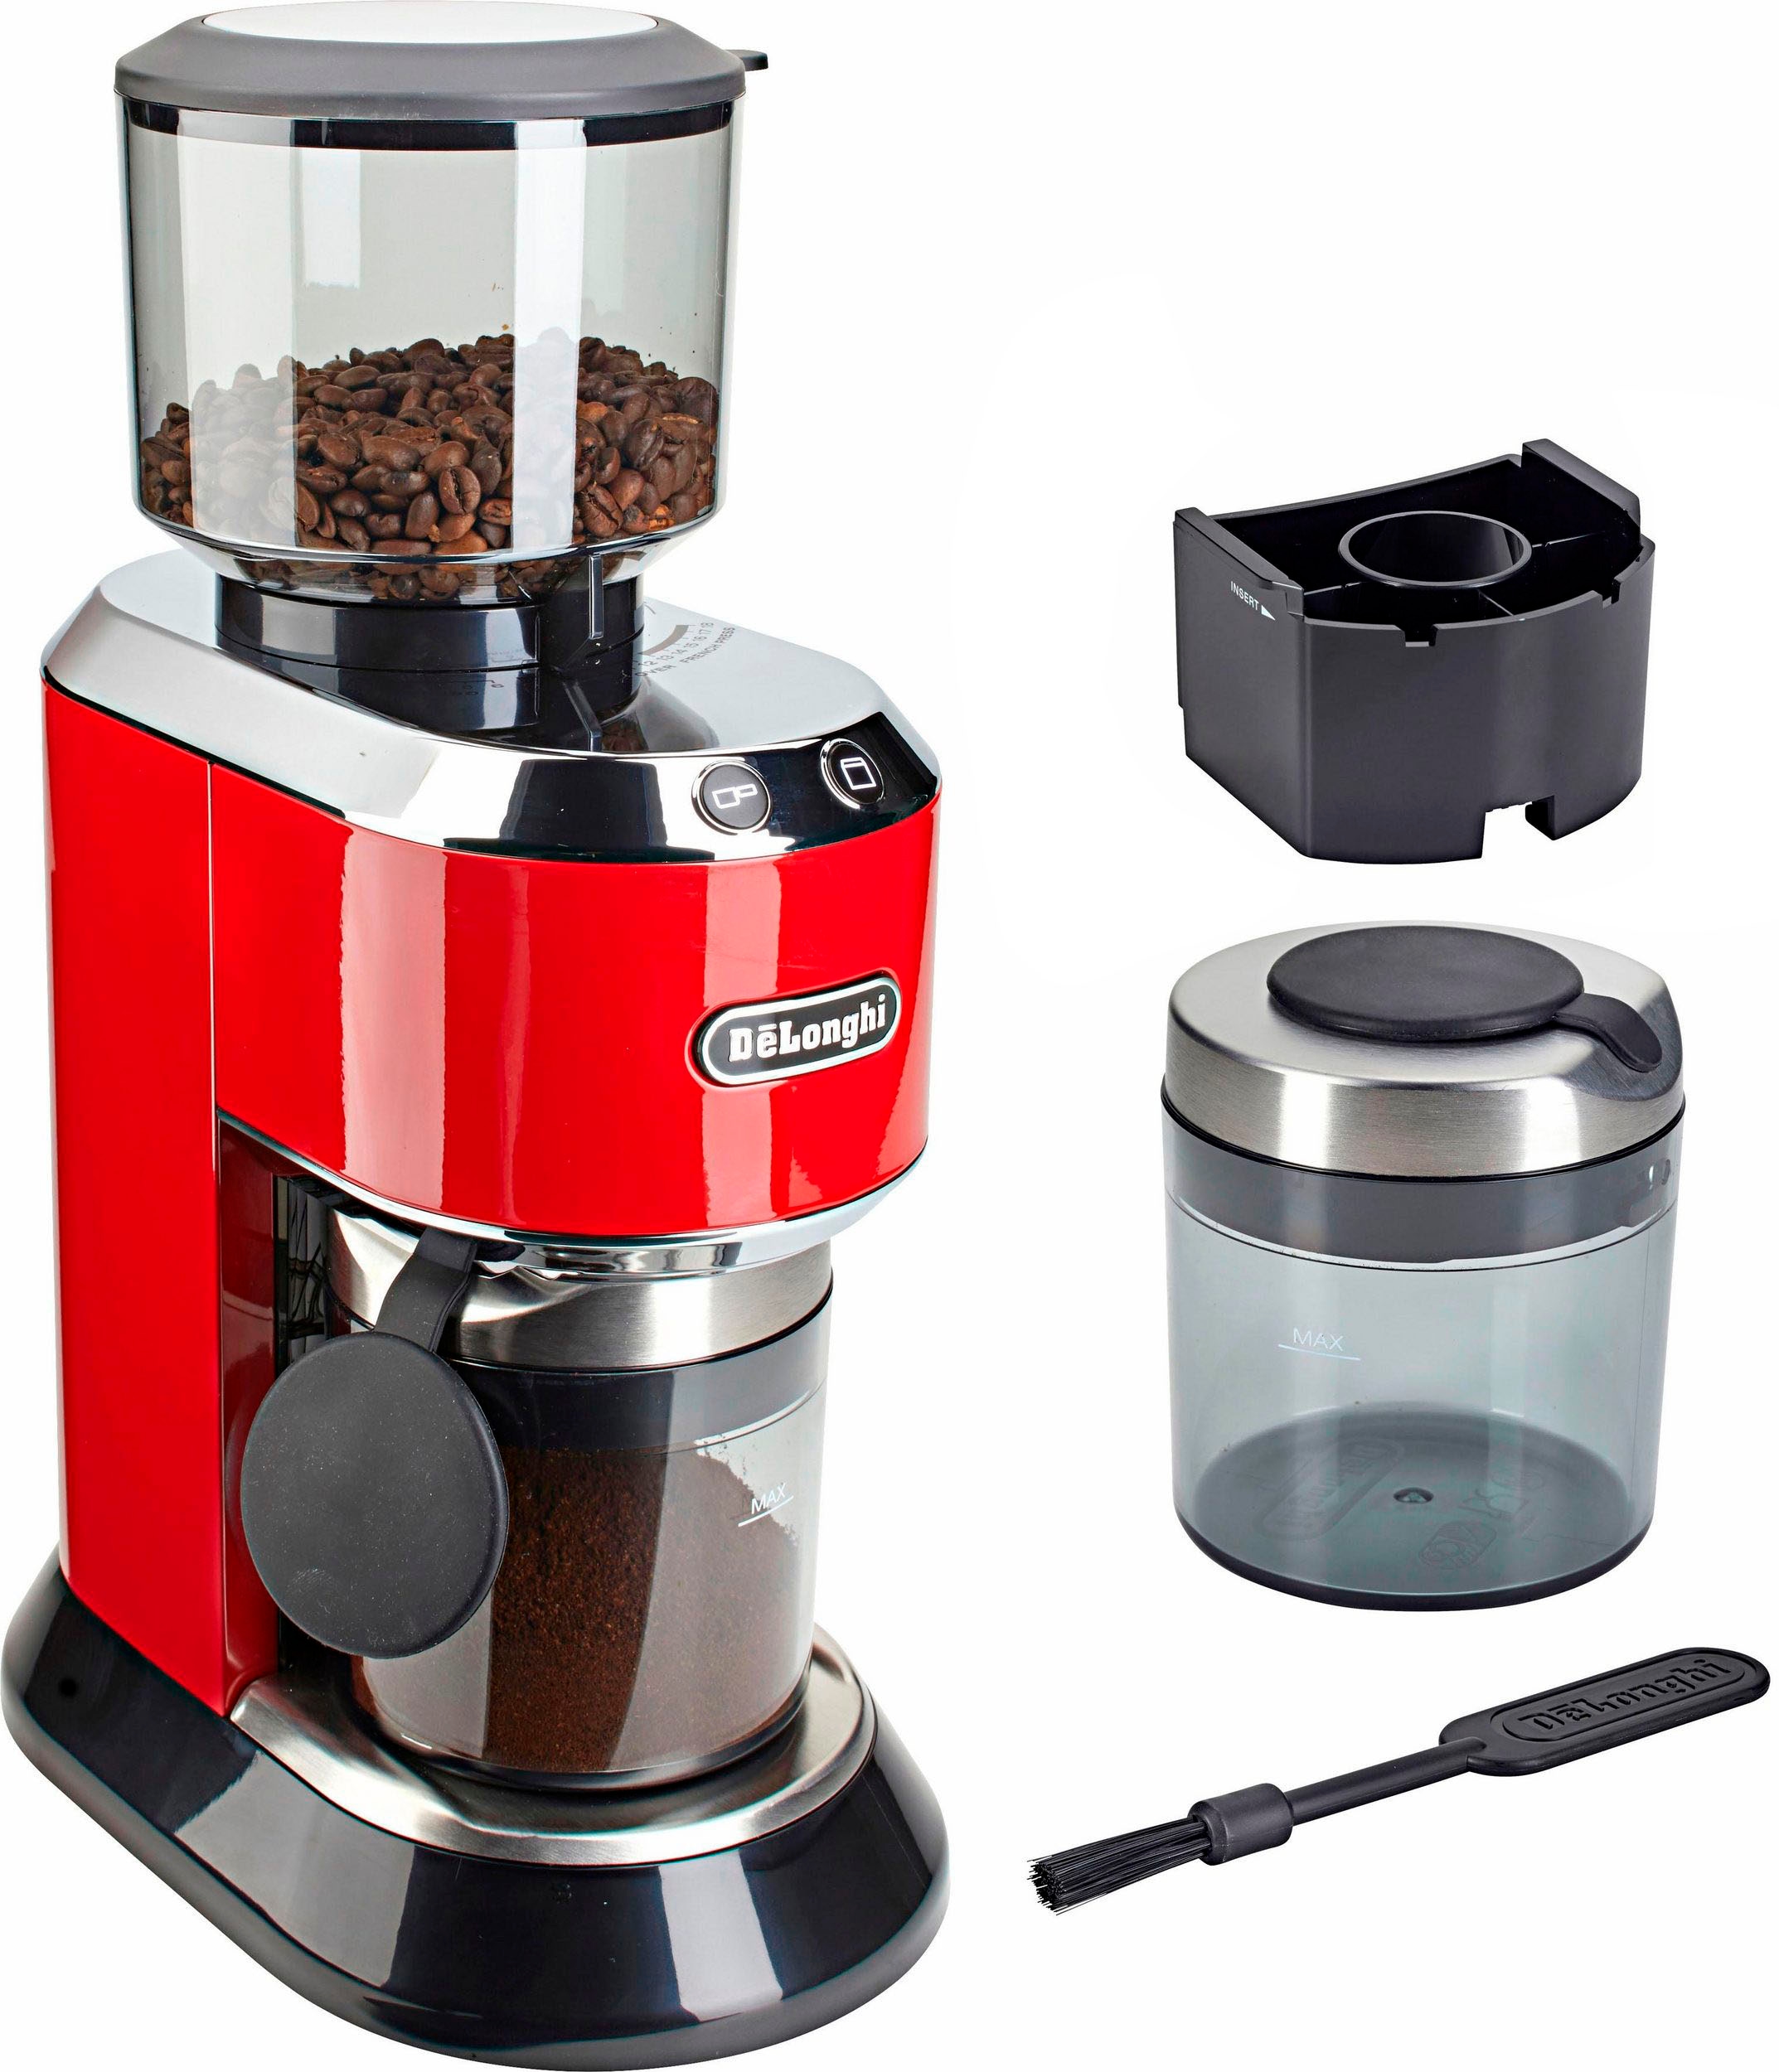 DeLonghi Kaffeemühle "Dedica KG520.R", 150 W, Kegelmahlwerk, 350 g Bohnenbehälter